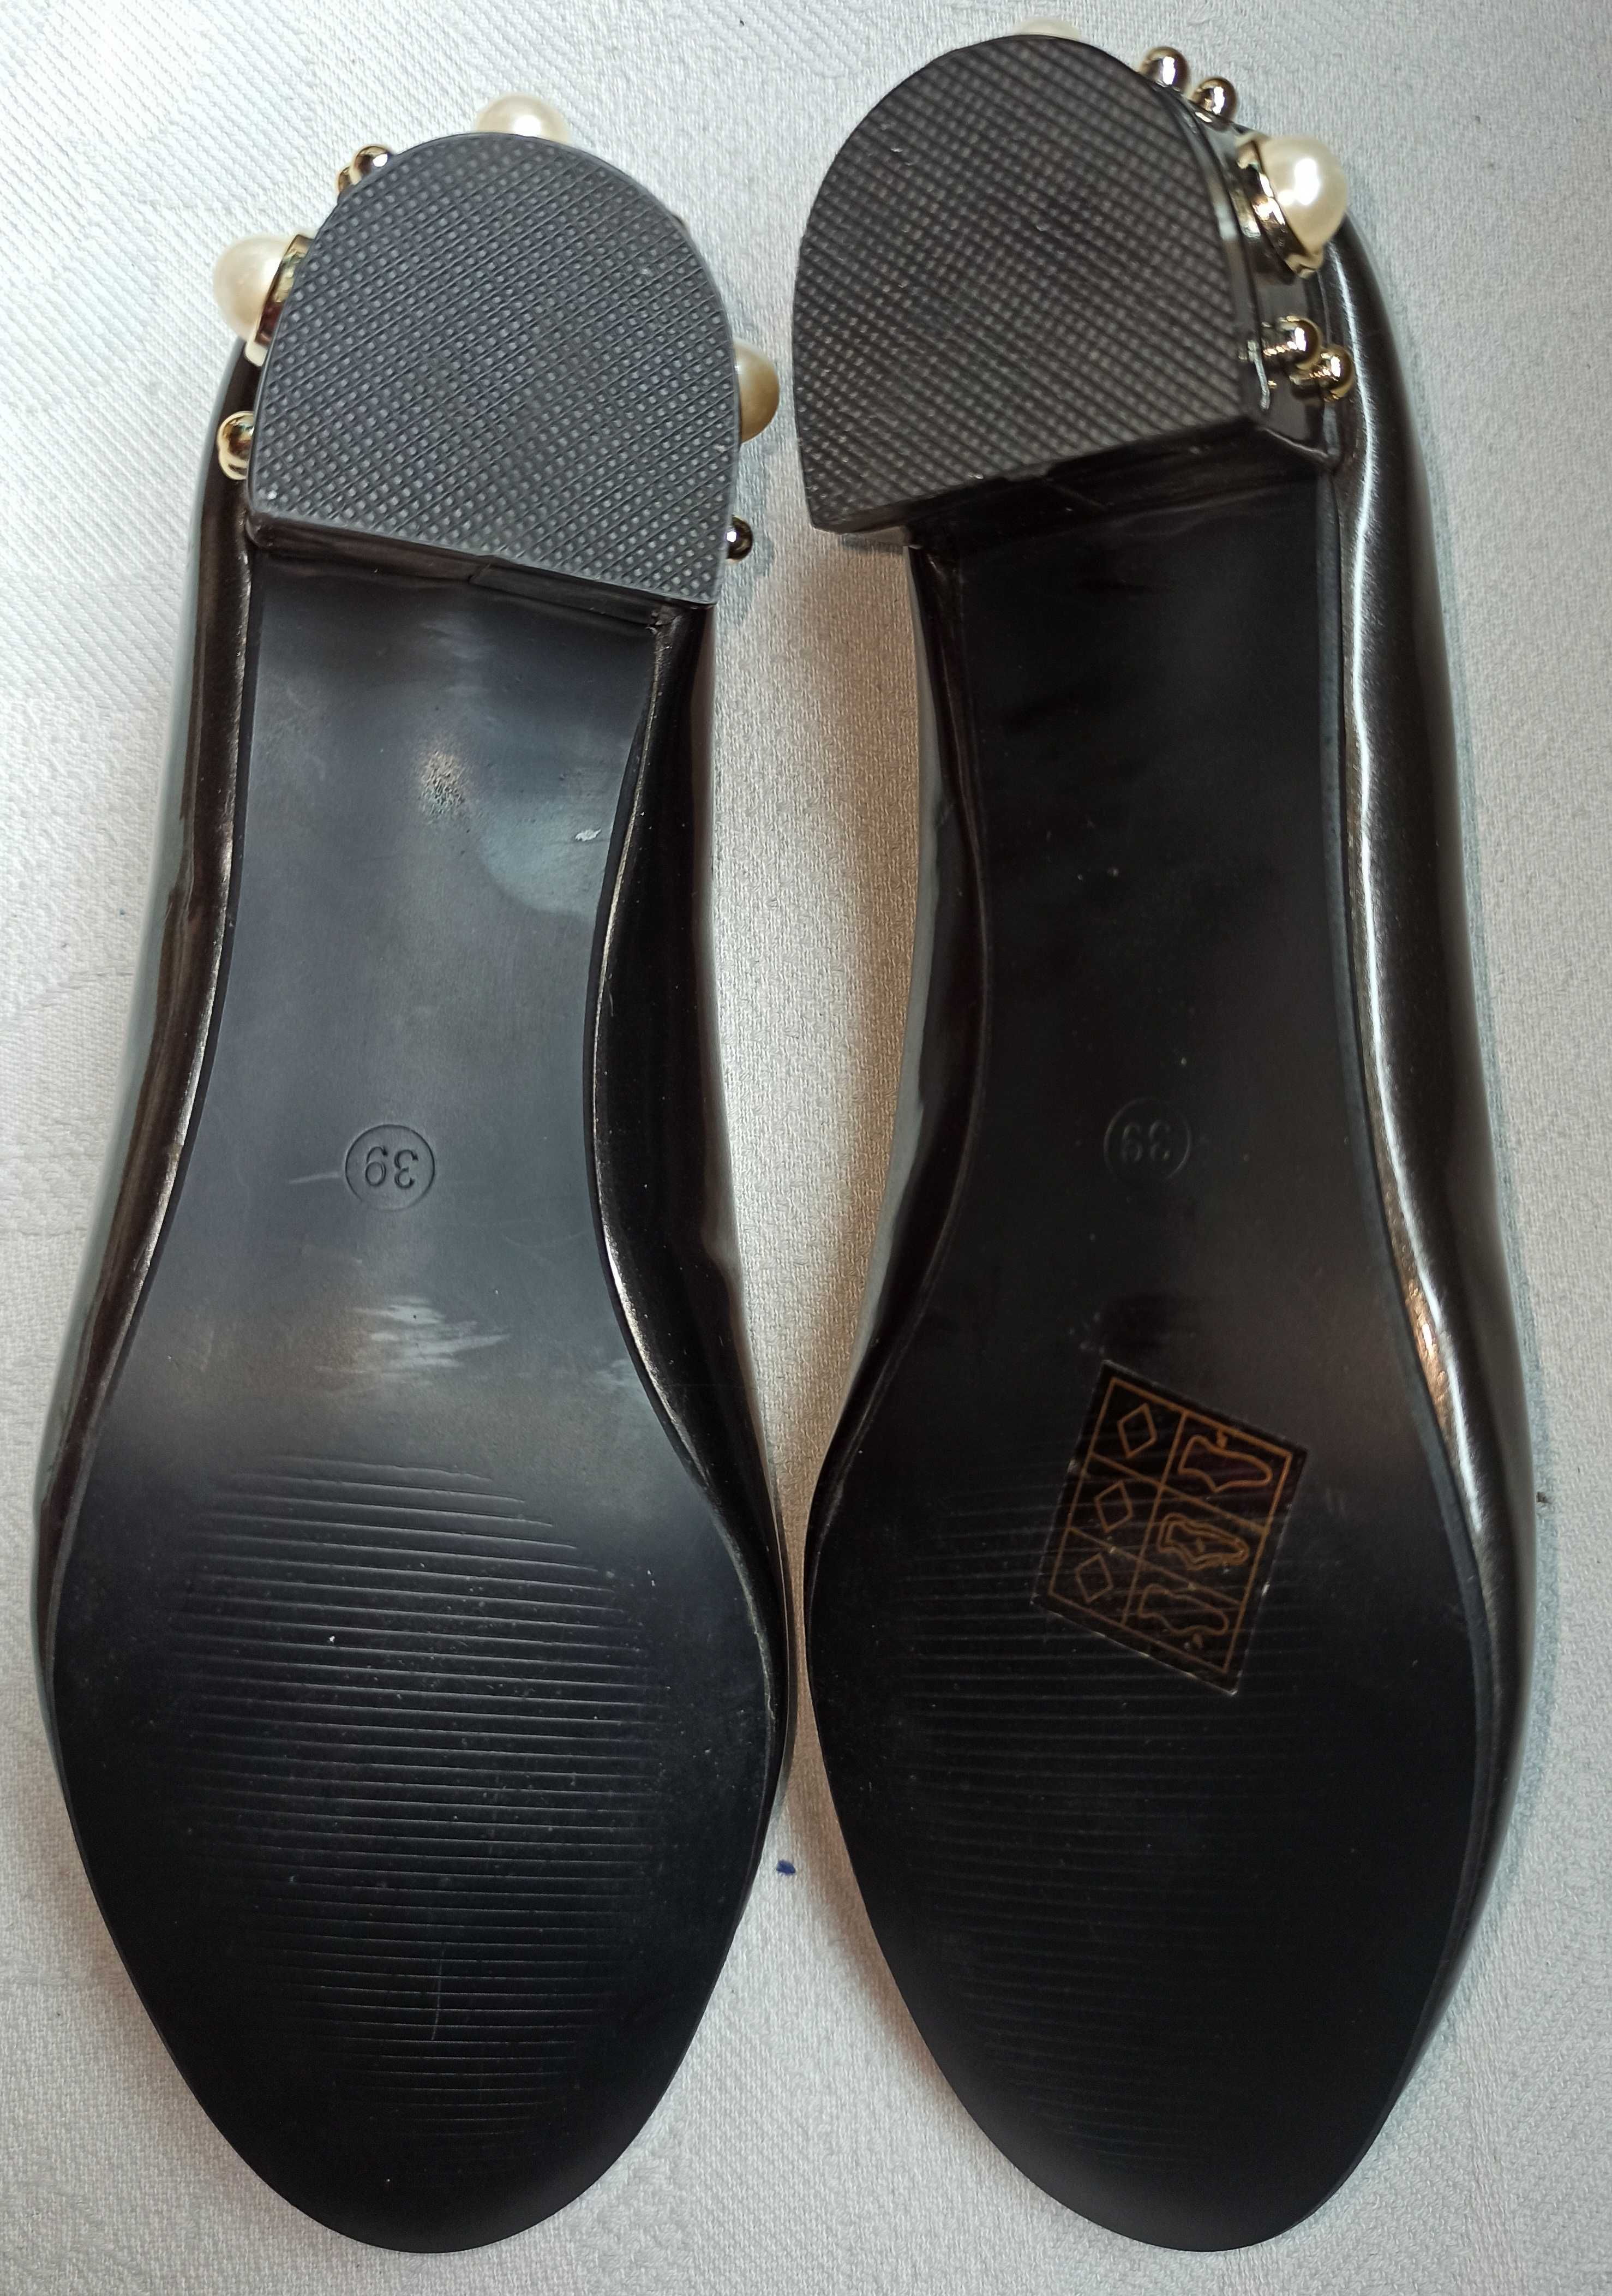 Продам нарядные туфельки Aldum 39размера, стелька 25.3см НОВЫЕ